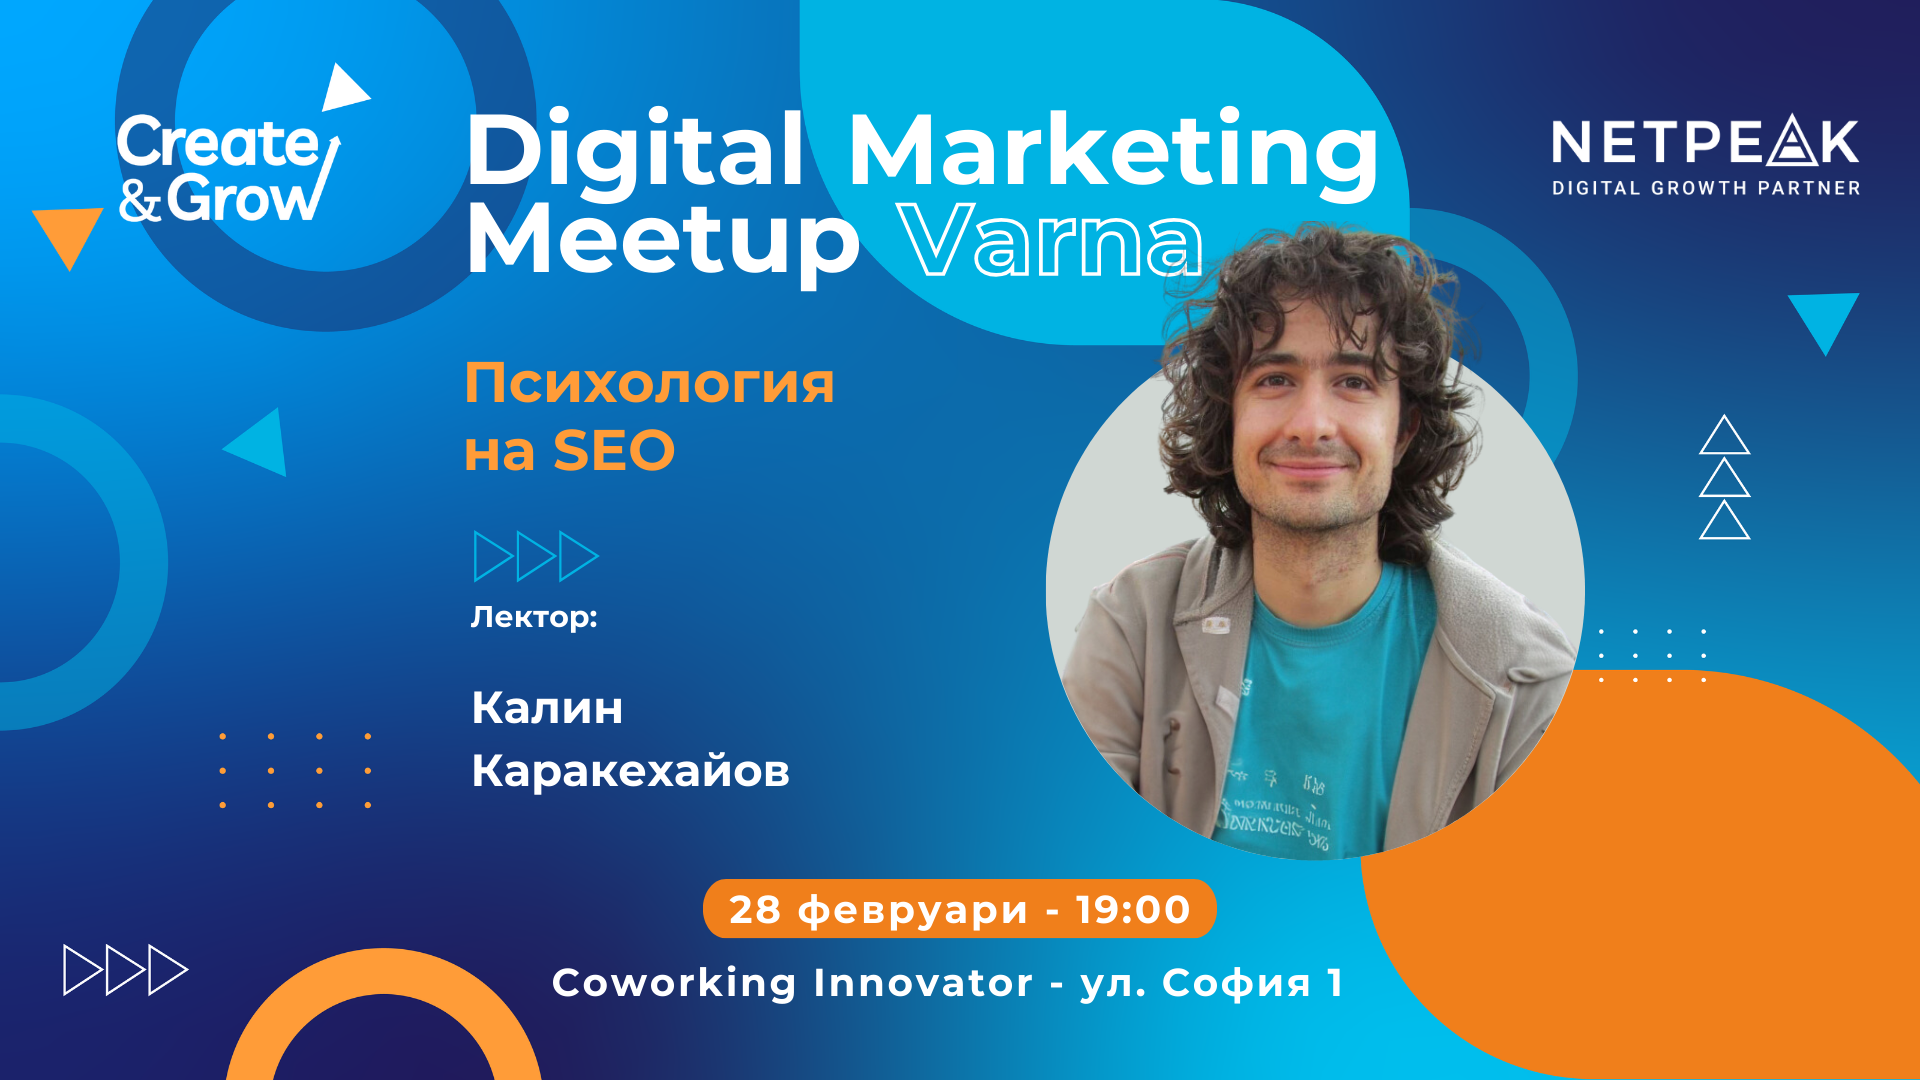 Digital Marketing Meetup Varna 1 | Innovator Coworking Space